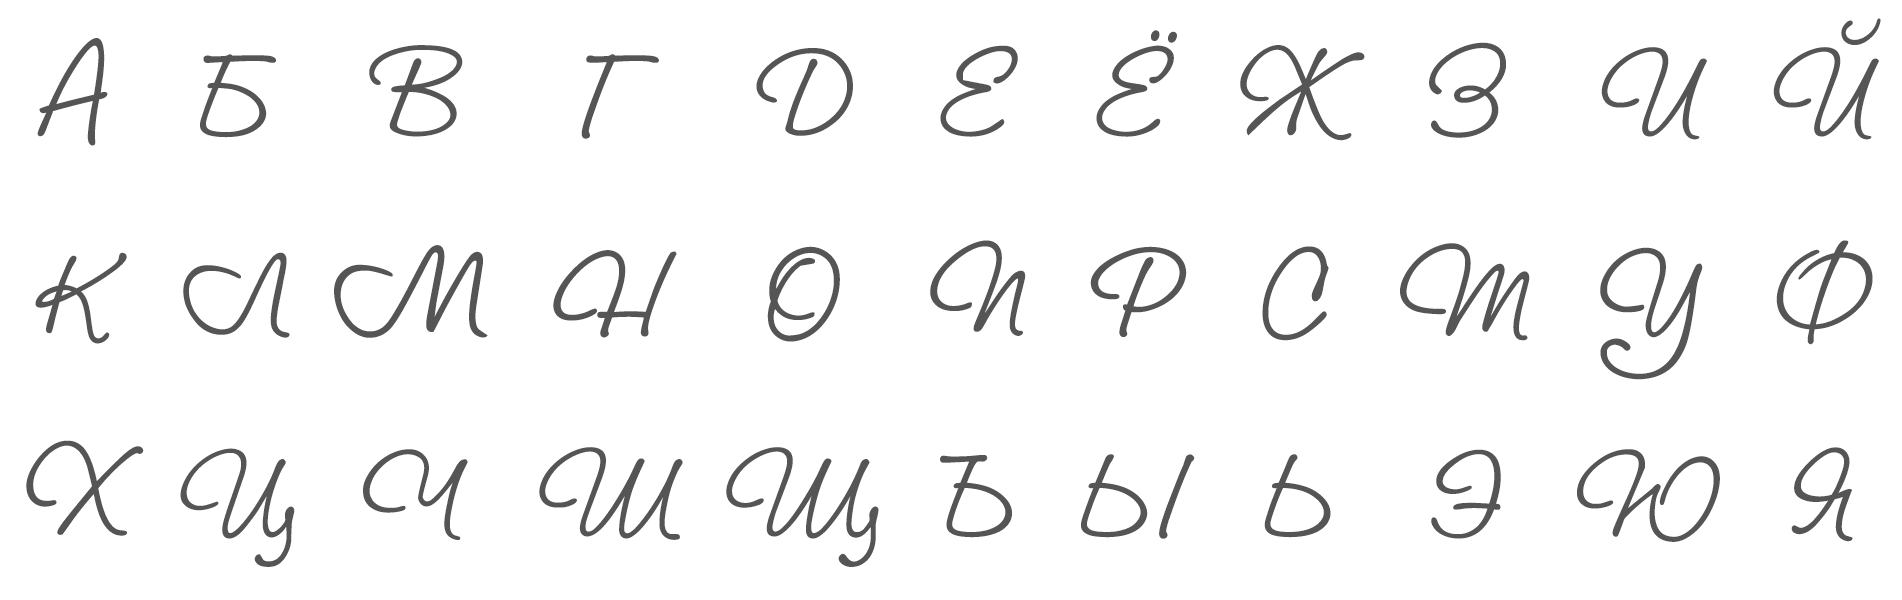 Русский алфавит красивыми буквами. Красивый почерк буквы алфавита. Красивый подверк алфавит. Красивый почерк алавит. Шрифты скопировать буквы